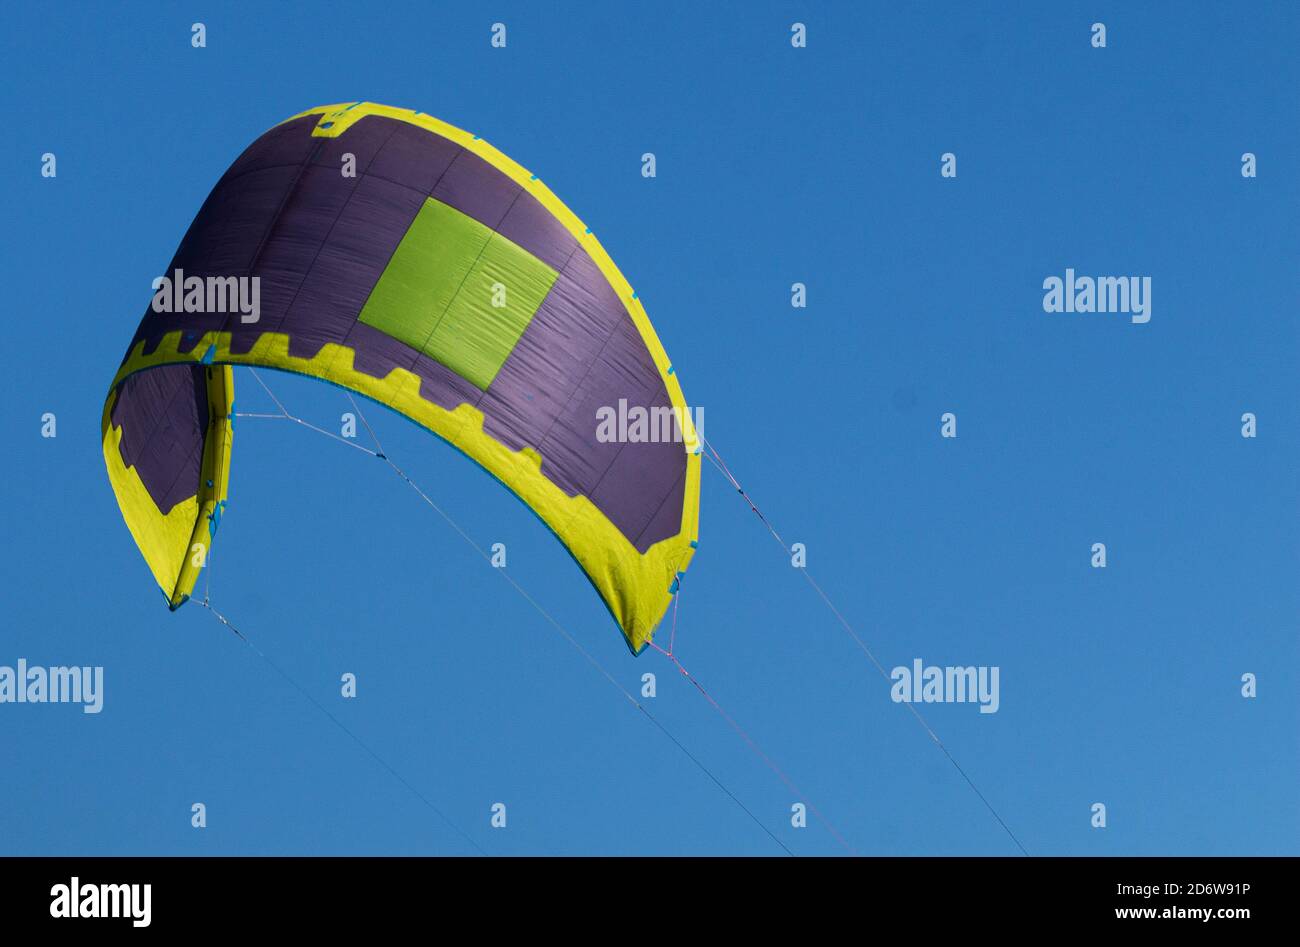 Una vela viola, gialla e verde di un surfista kite nell'aria con un cielo blu profondo come sfondo. Foto Stock